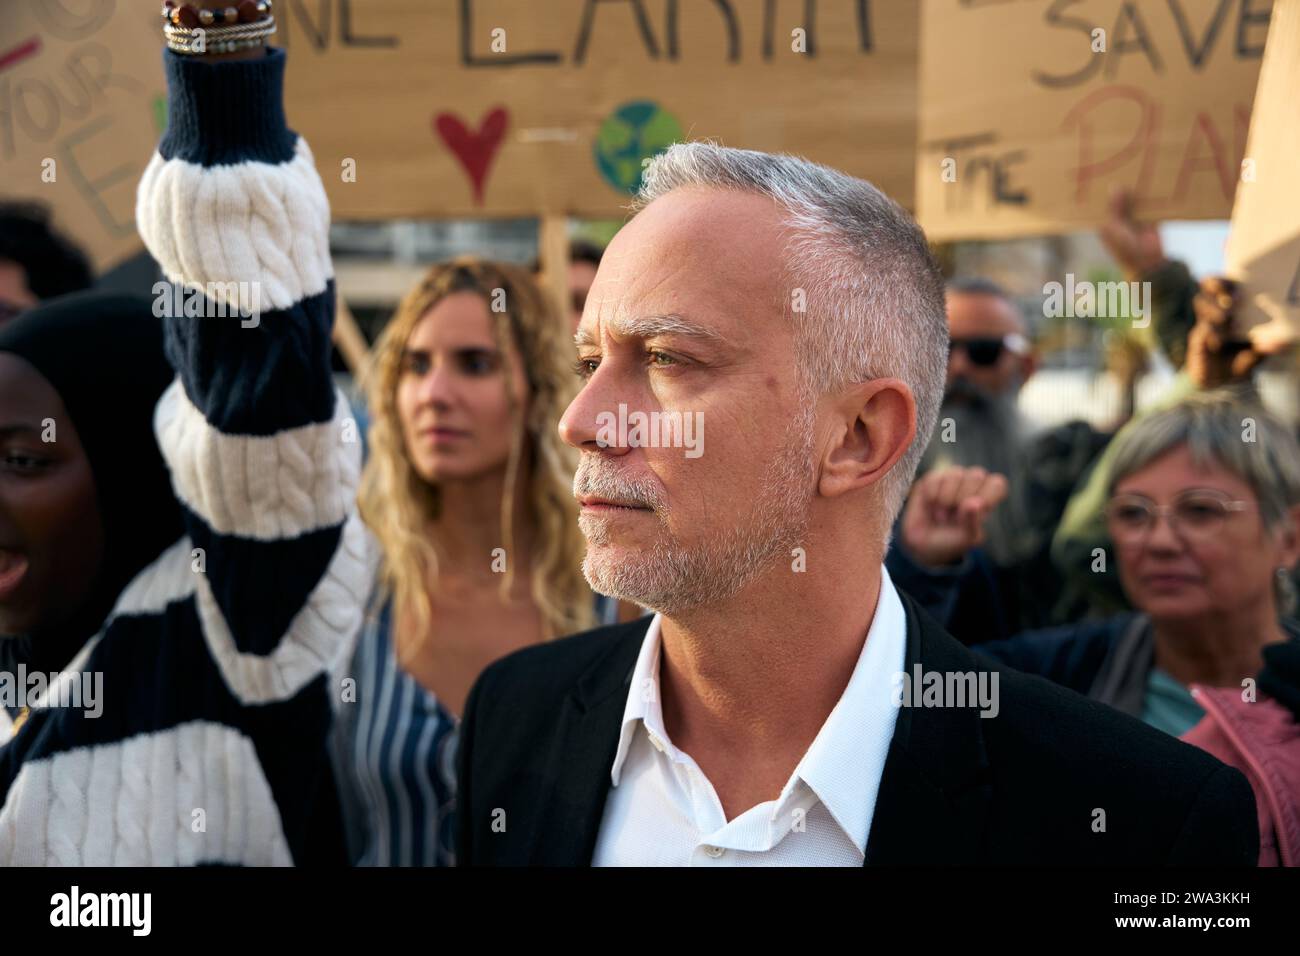 Homme en colère et rebelle et protestant avec un mégaphone lors d'une manifestation contre le changement climatique Banque D'Images